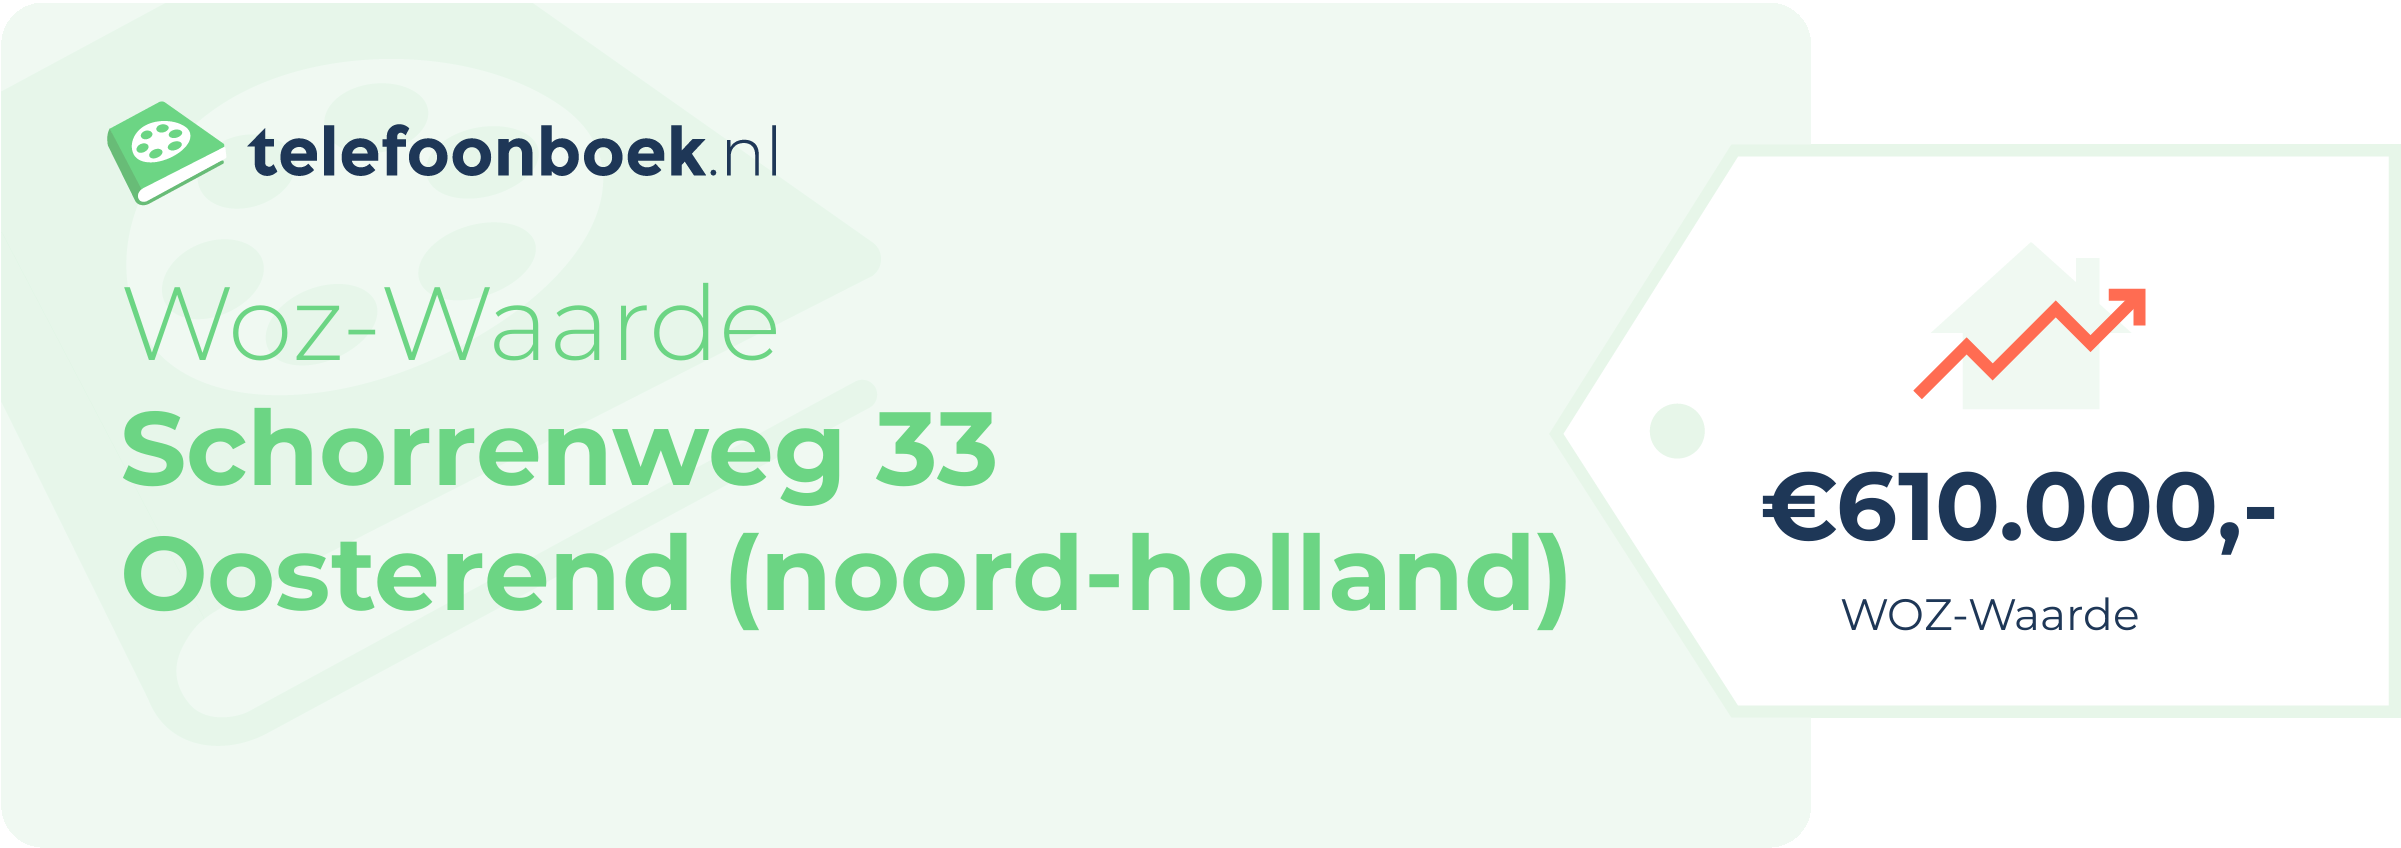 WOZ-waarde Schorrenweg 33 Oosterend (Noord-Holland)